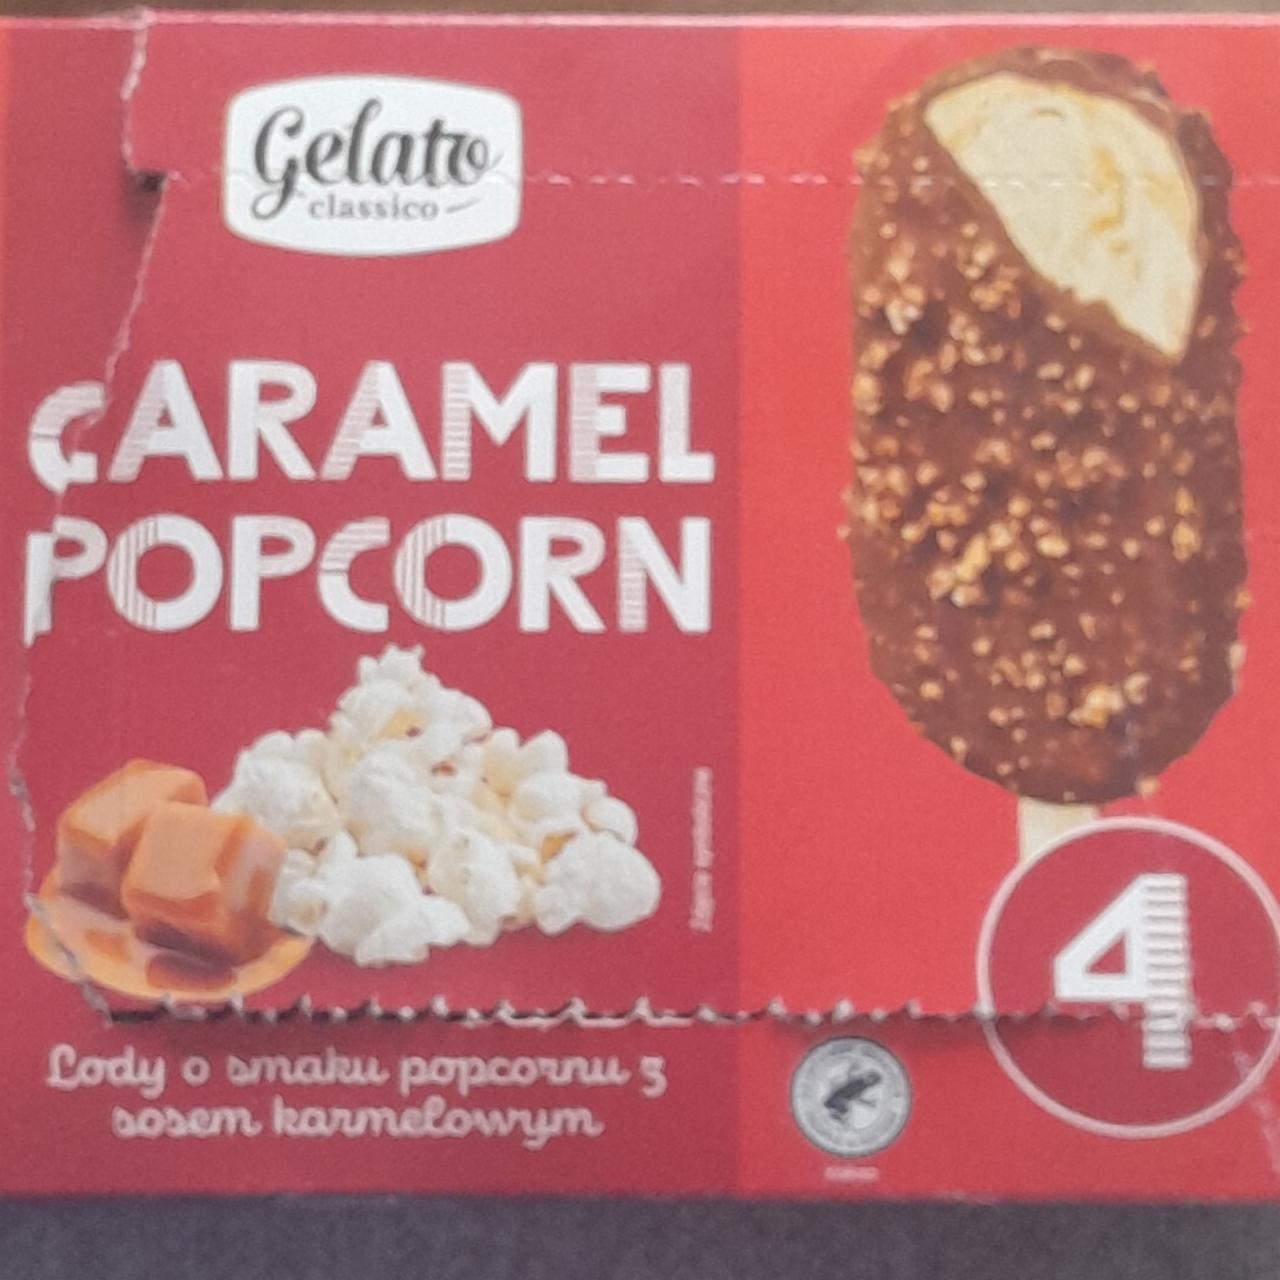 Zdjęcia - Caramel Popcorn Gelato Classico